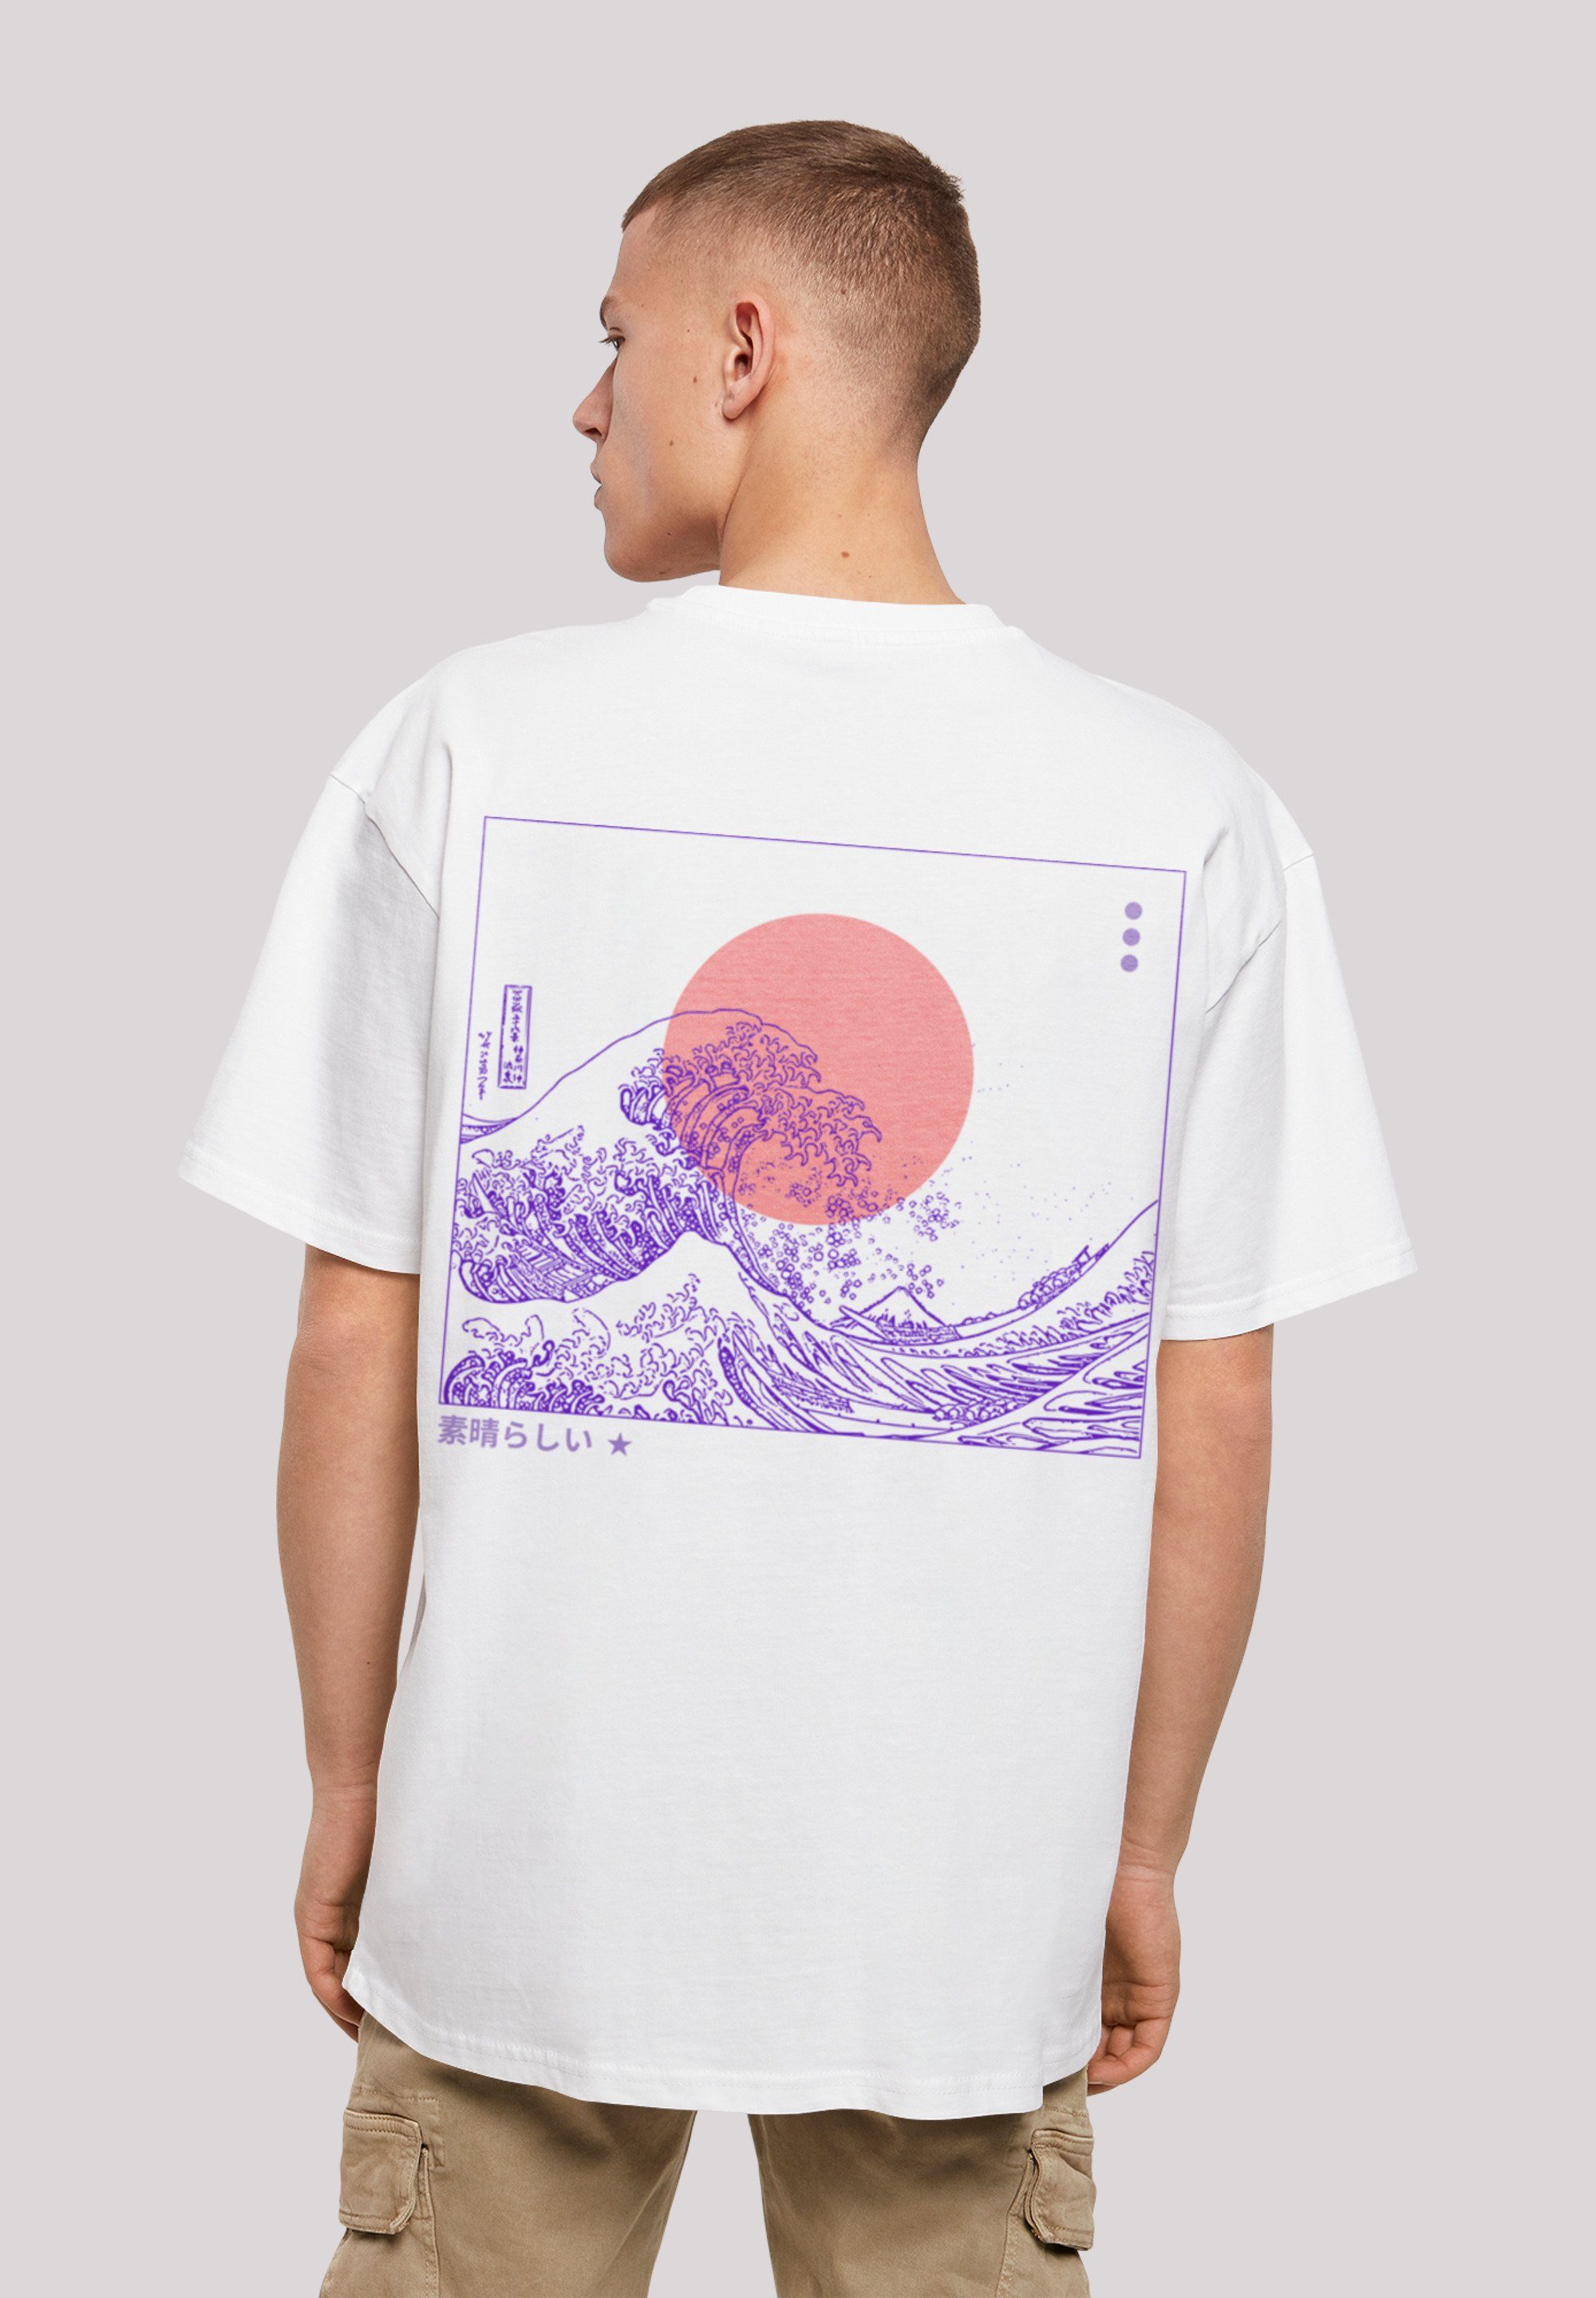 F4NT4STIC T-Shirt Kanagawa Welle Japan Print weiß